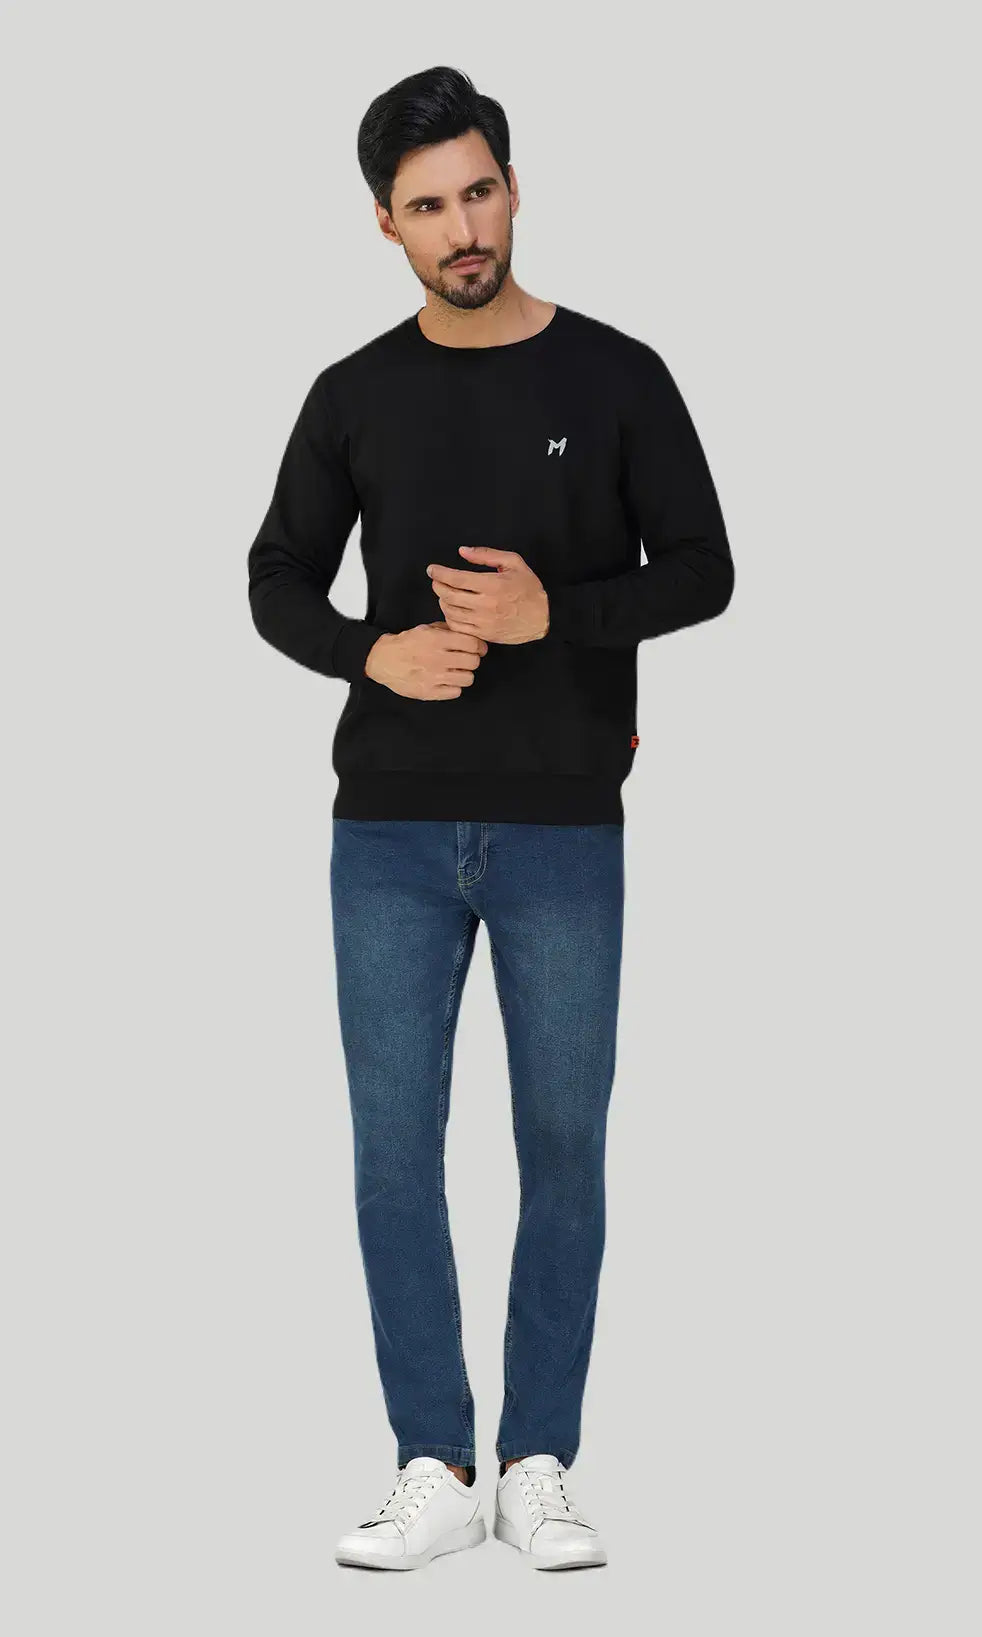 Mebadass Cotton Men's Winterwear Sweatshirt - Black